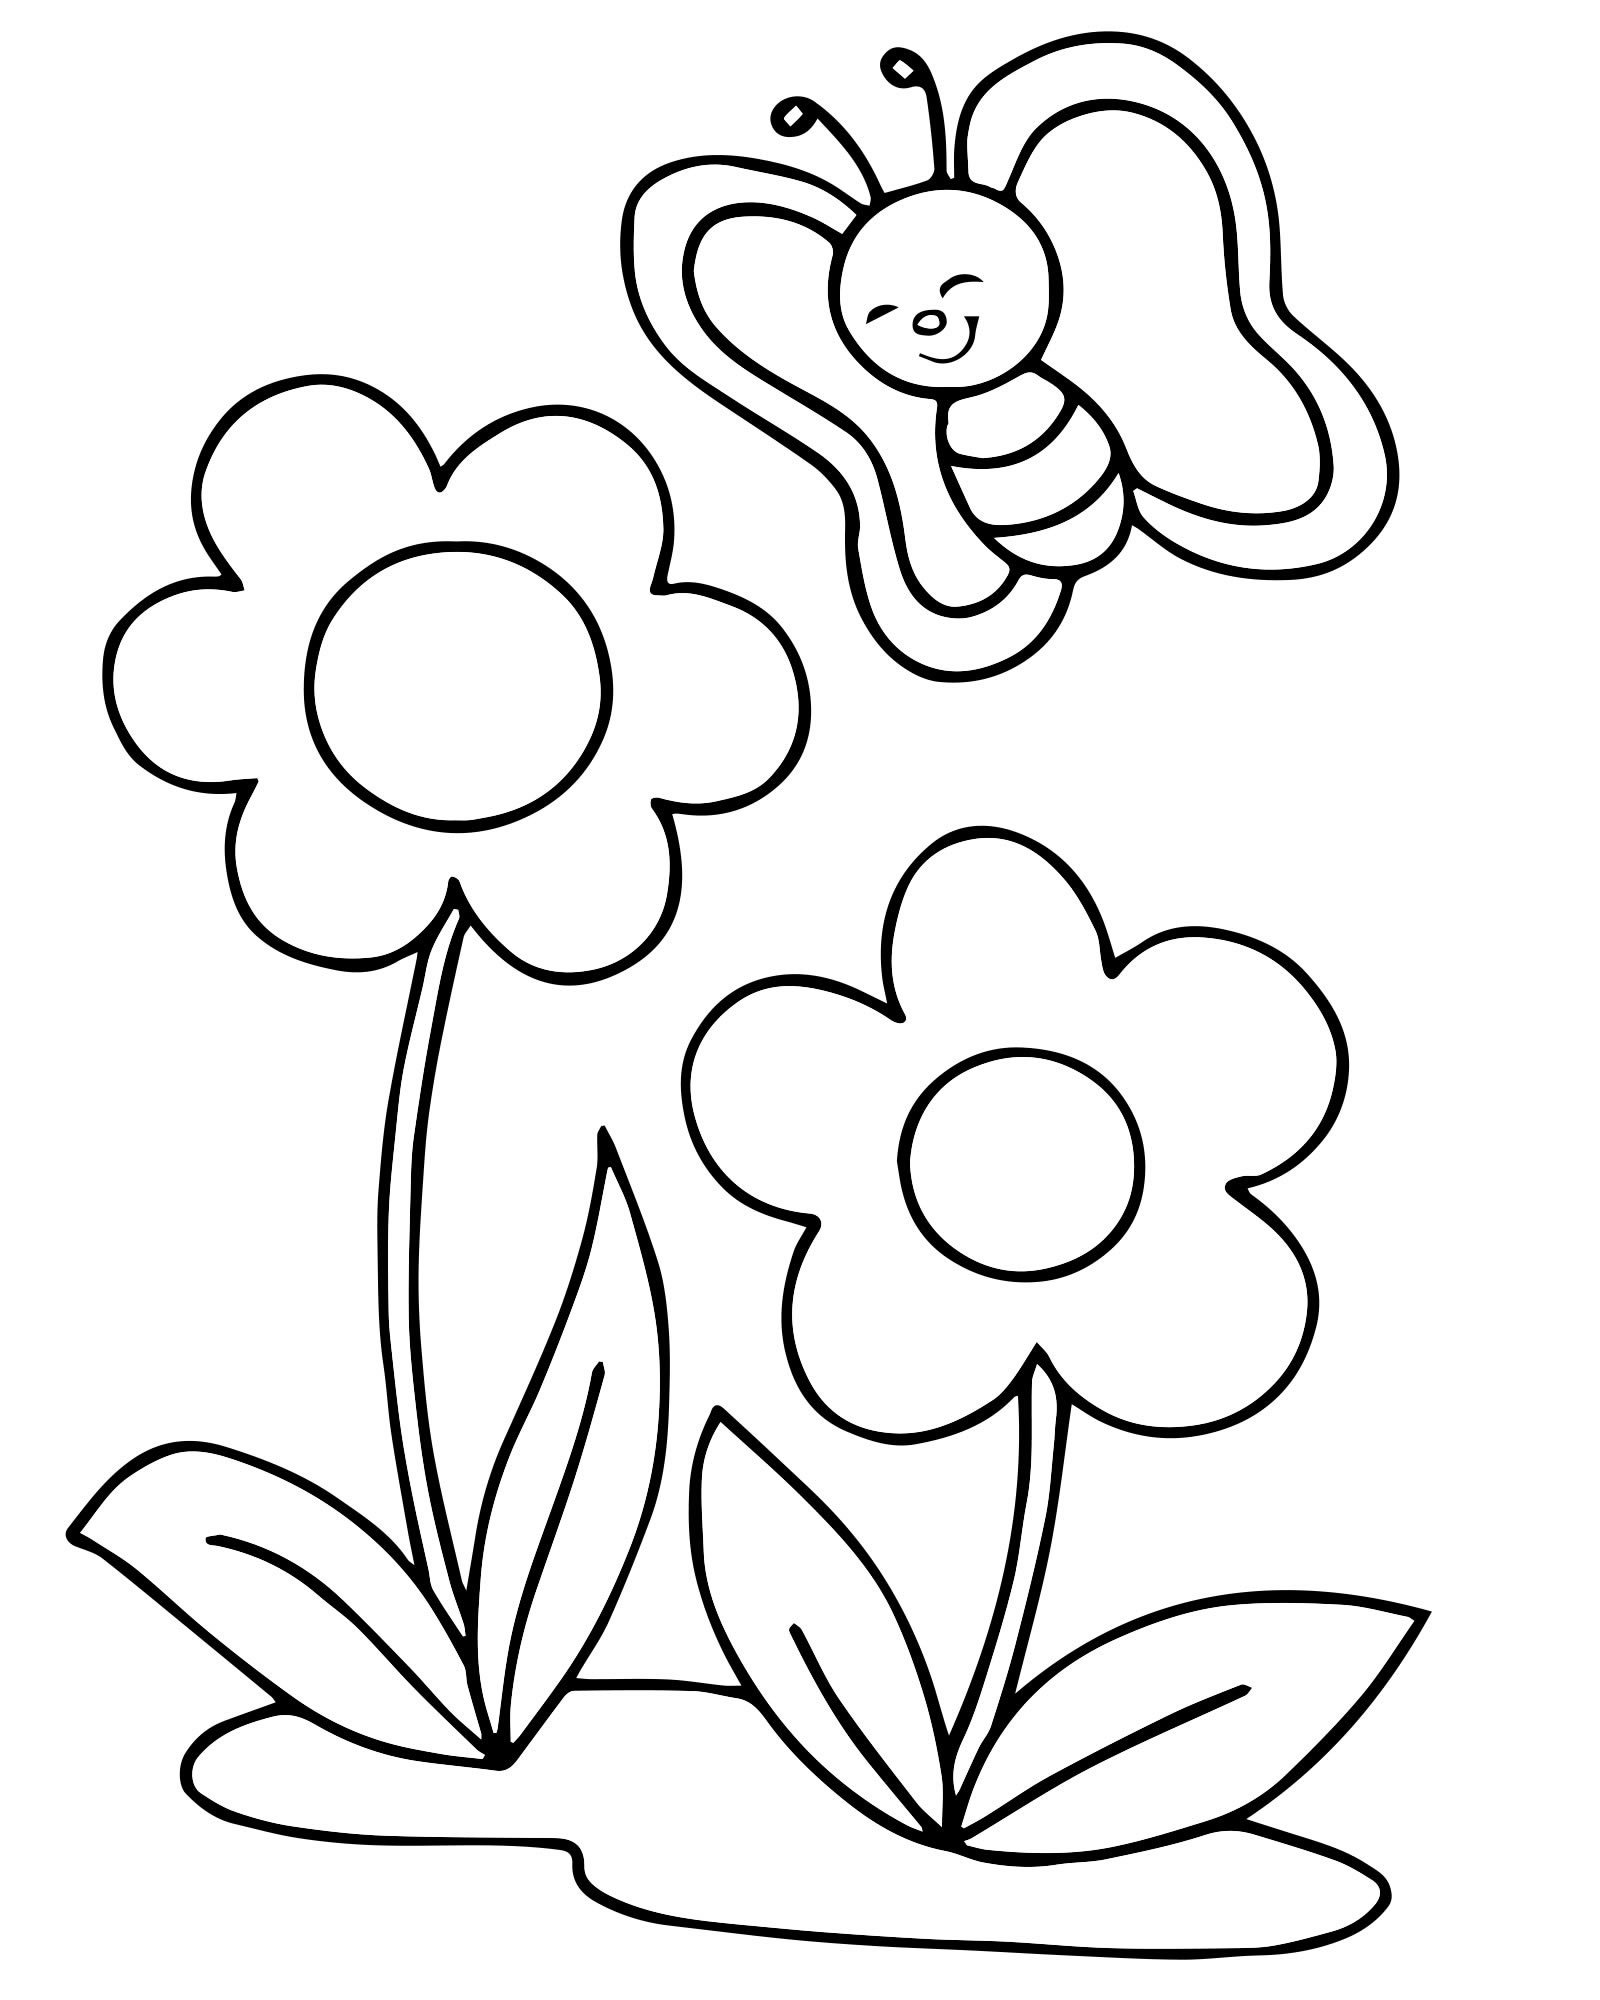 Раскраска цветок для детей 3-4 лет